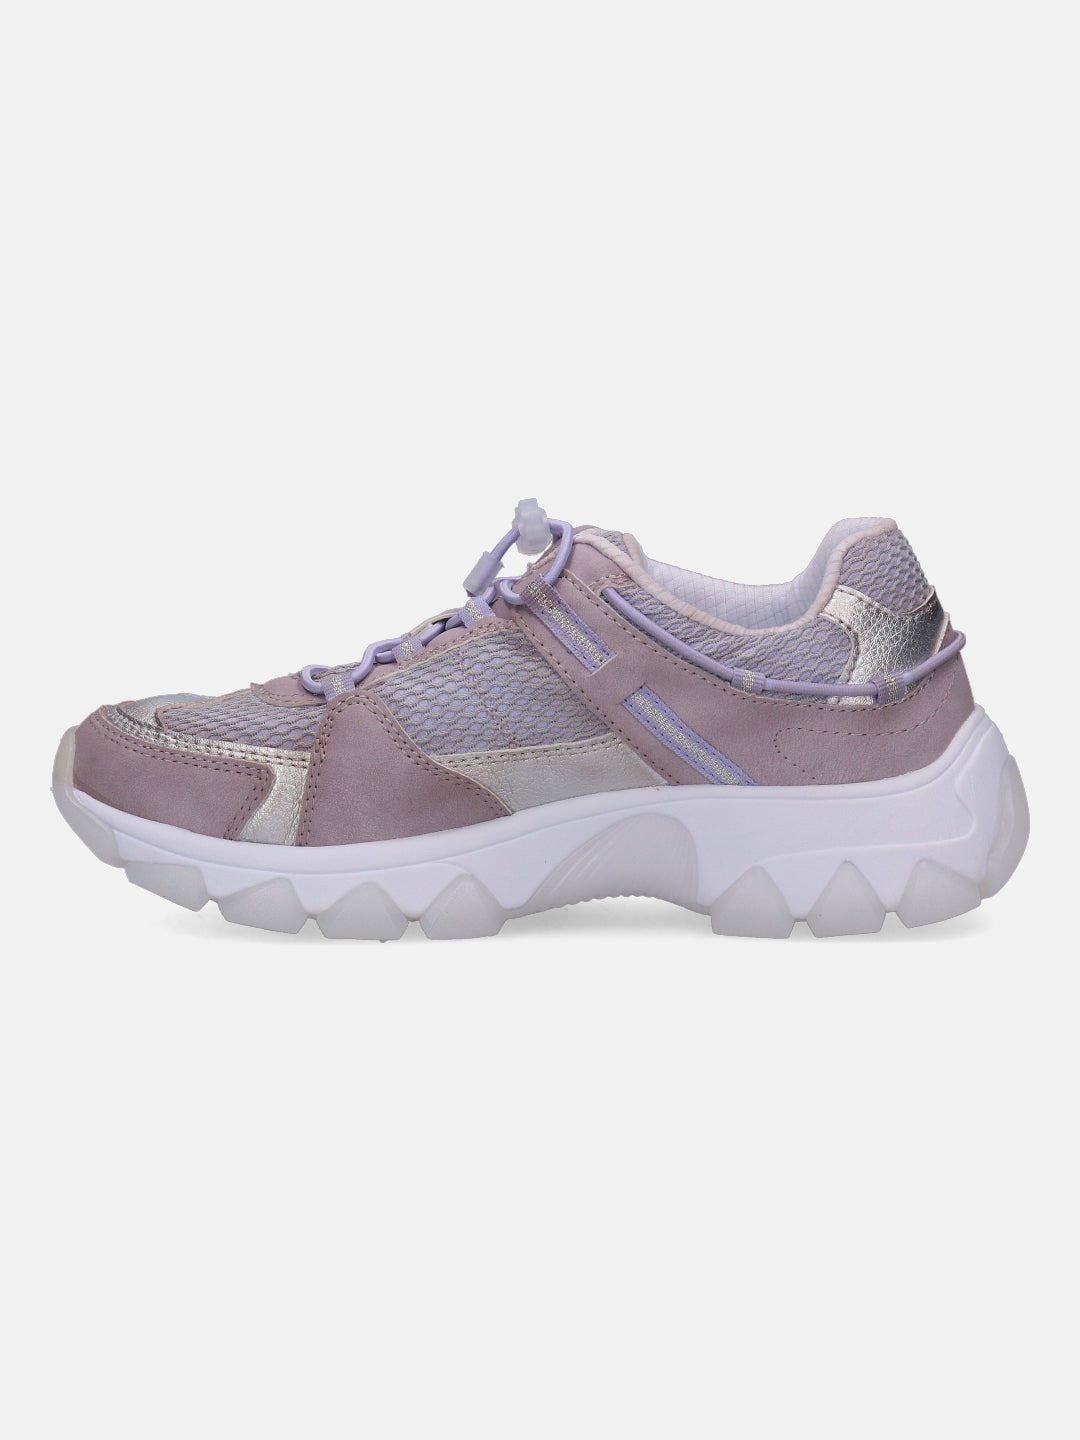 Yuki Lavender & Light Grey Sneakers - BAGATT